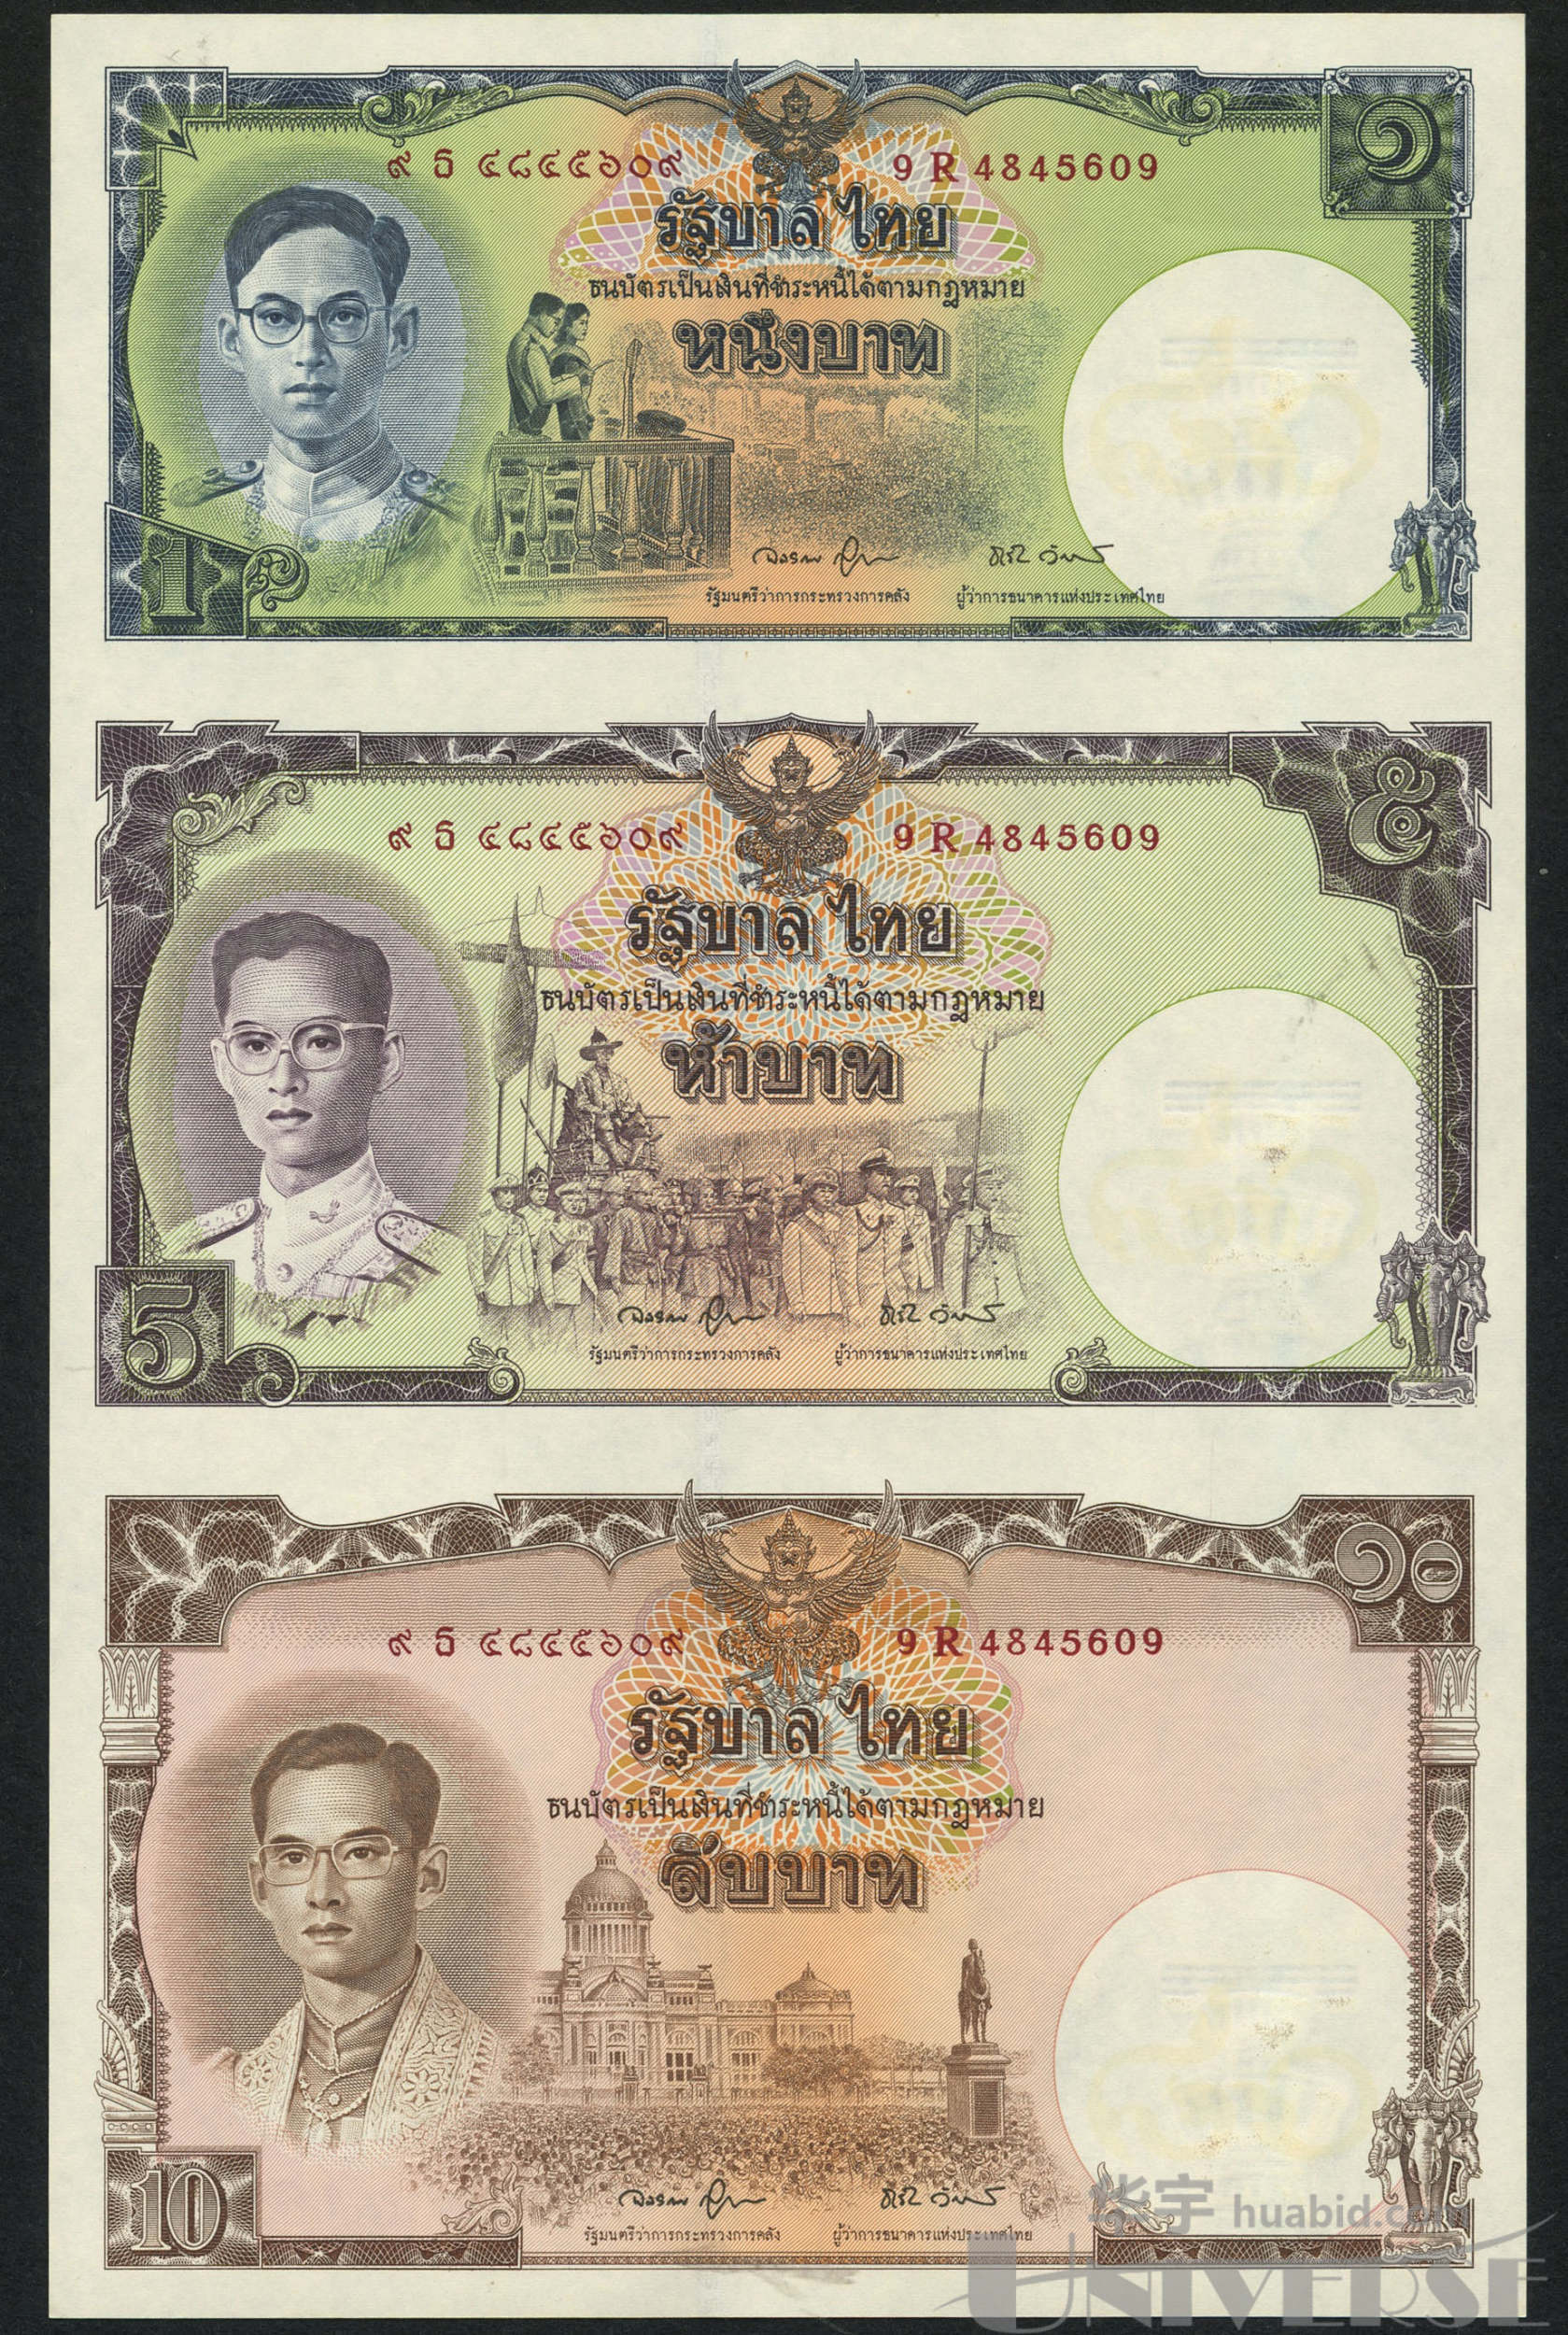 100泰国泰铢笔记的细节 库存照片. 图片 包括有 标本, 图象, 货币, 销售额, 投资, 储蓄, 替换 - 133959564